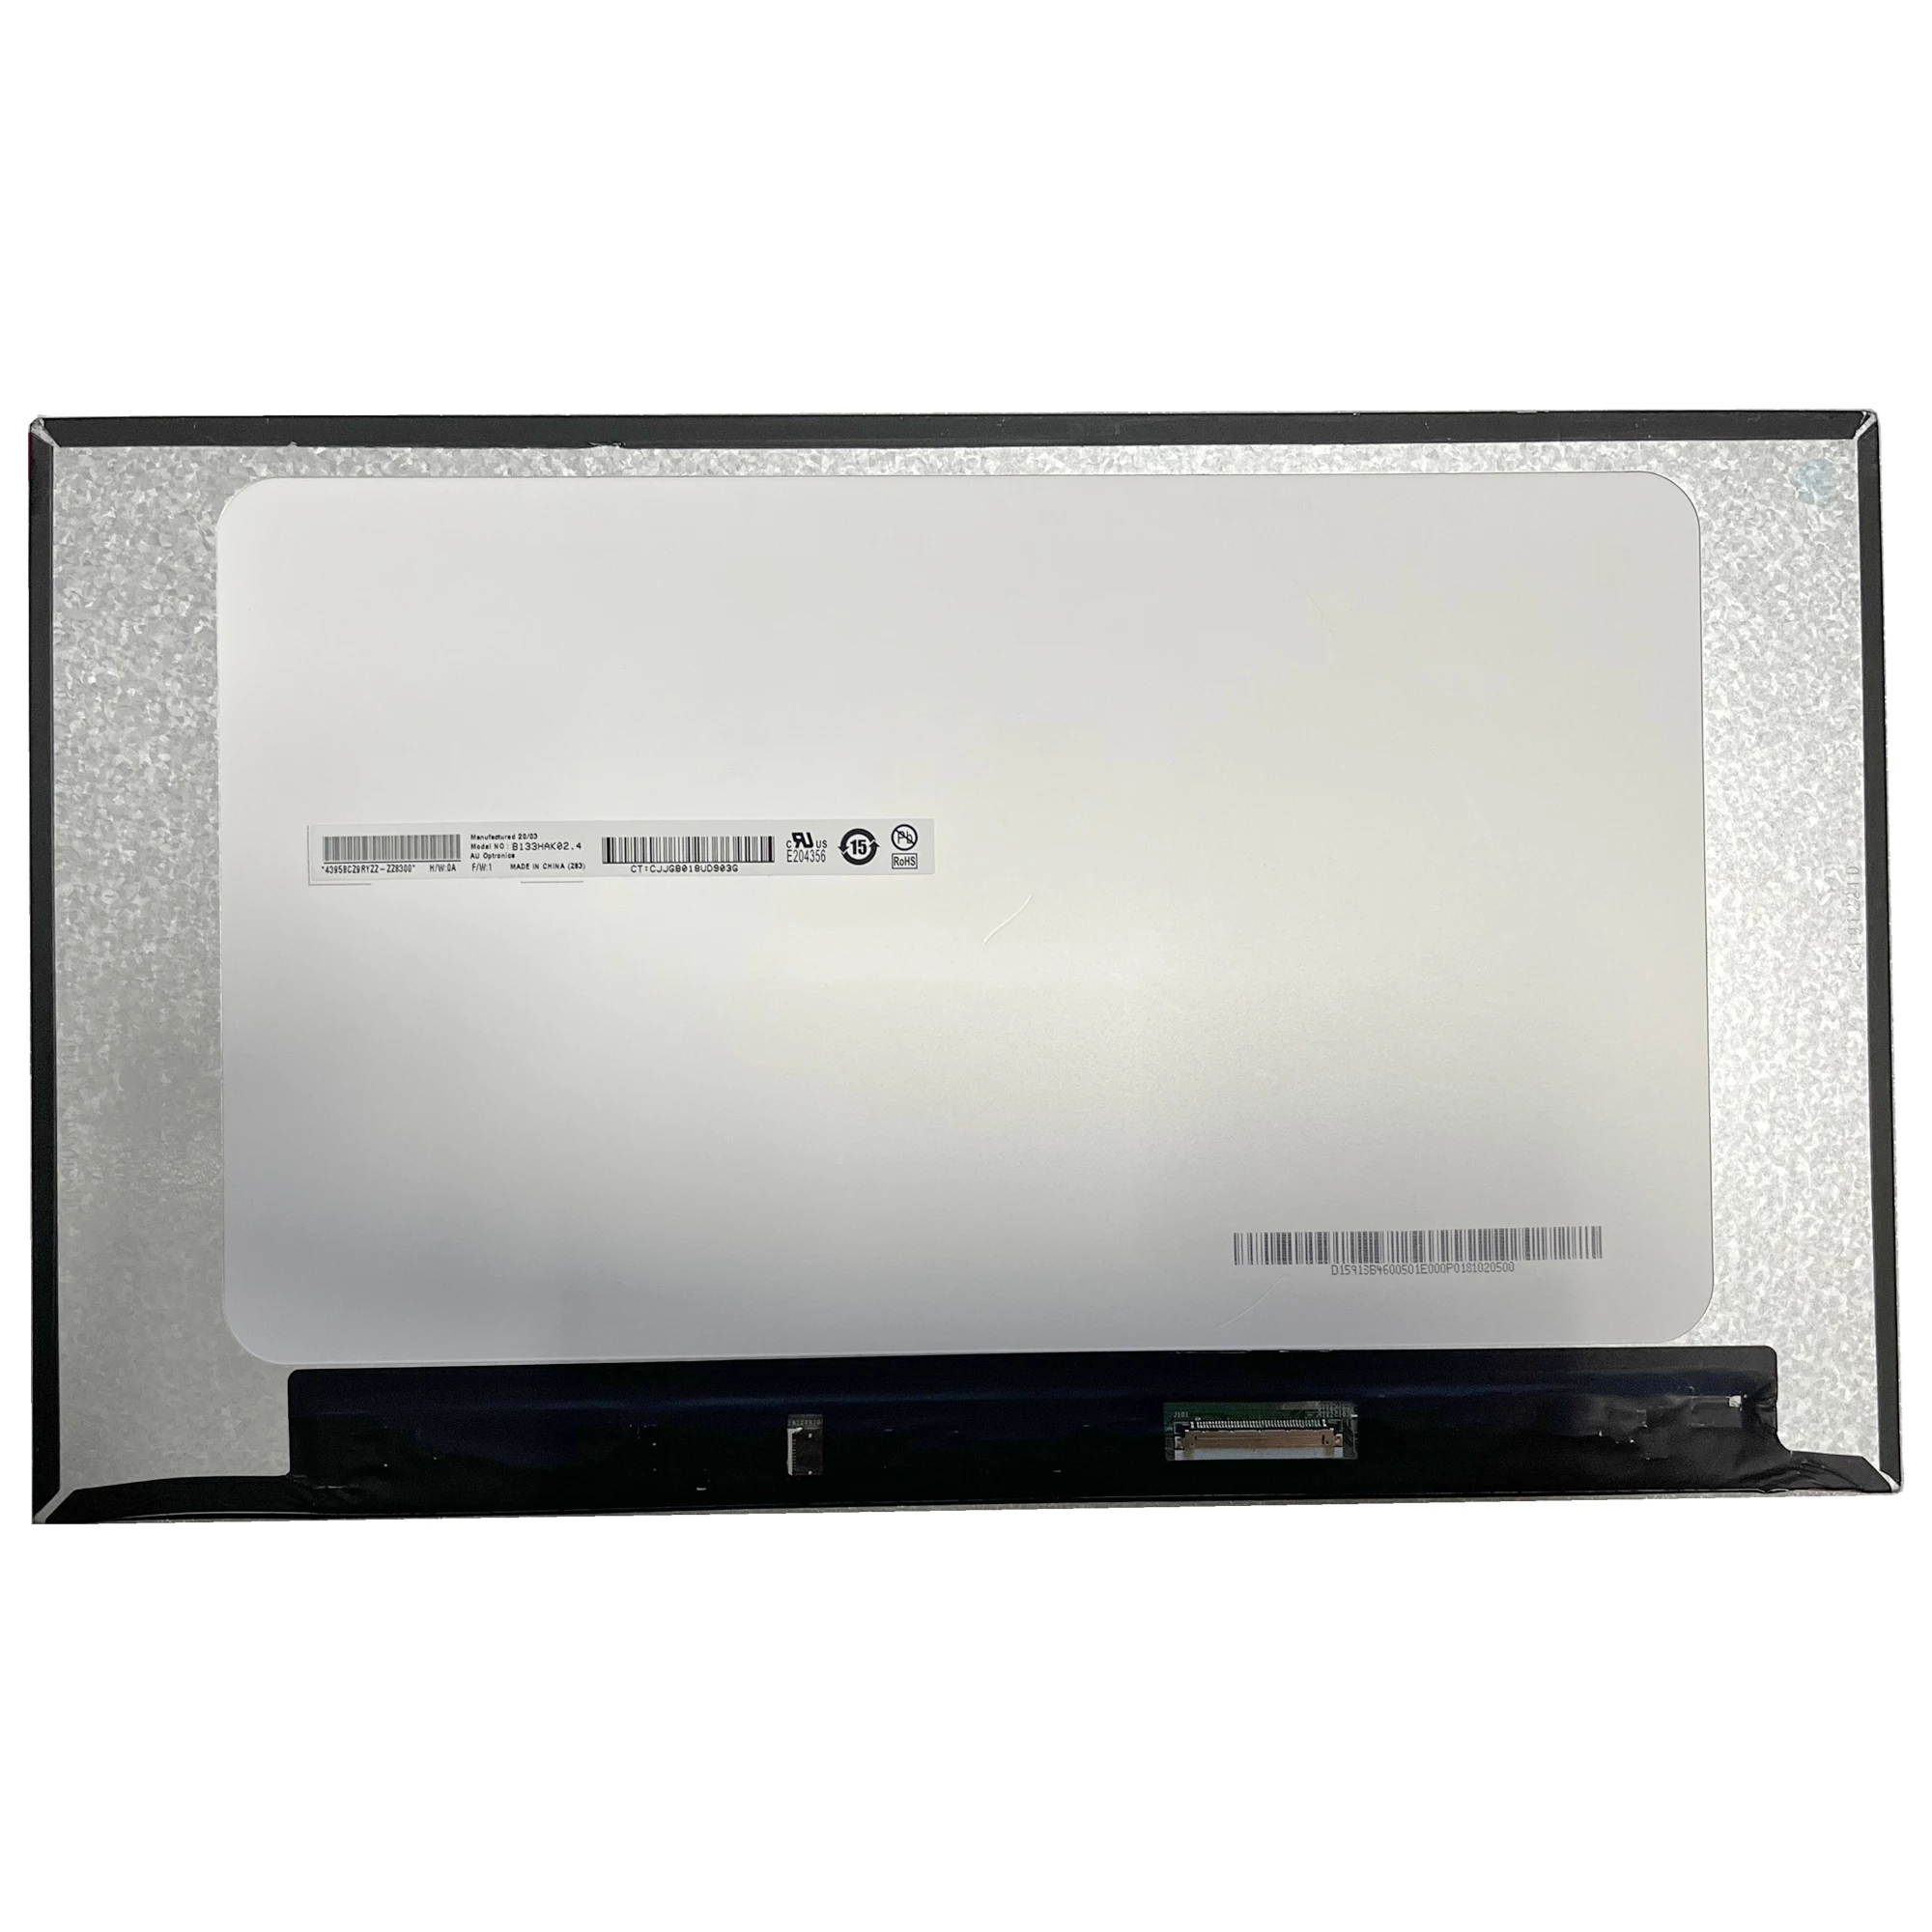 Новый экран ноутбука B133HAK02.4 13,3-дюймовый 40-контактный экран ноутбука EDP Slim FHD IPS